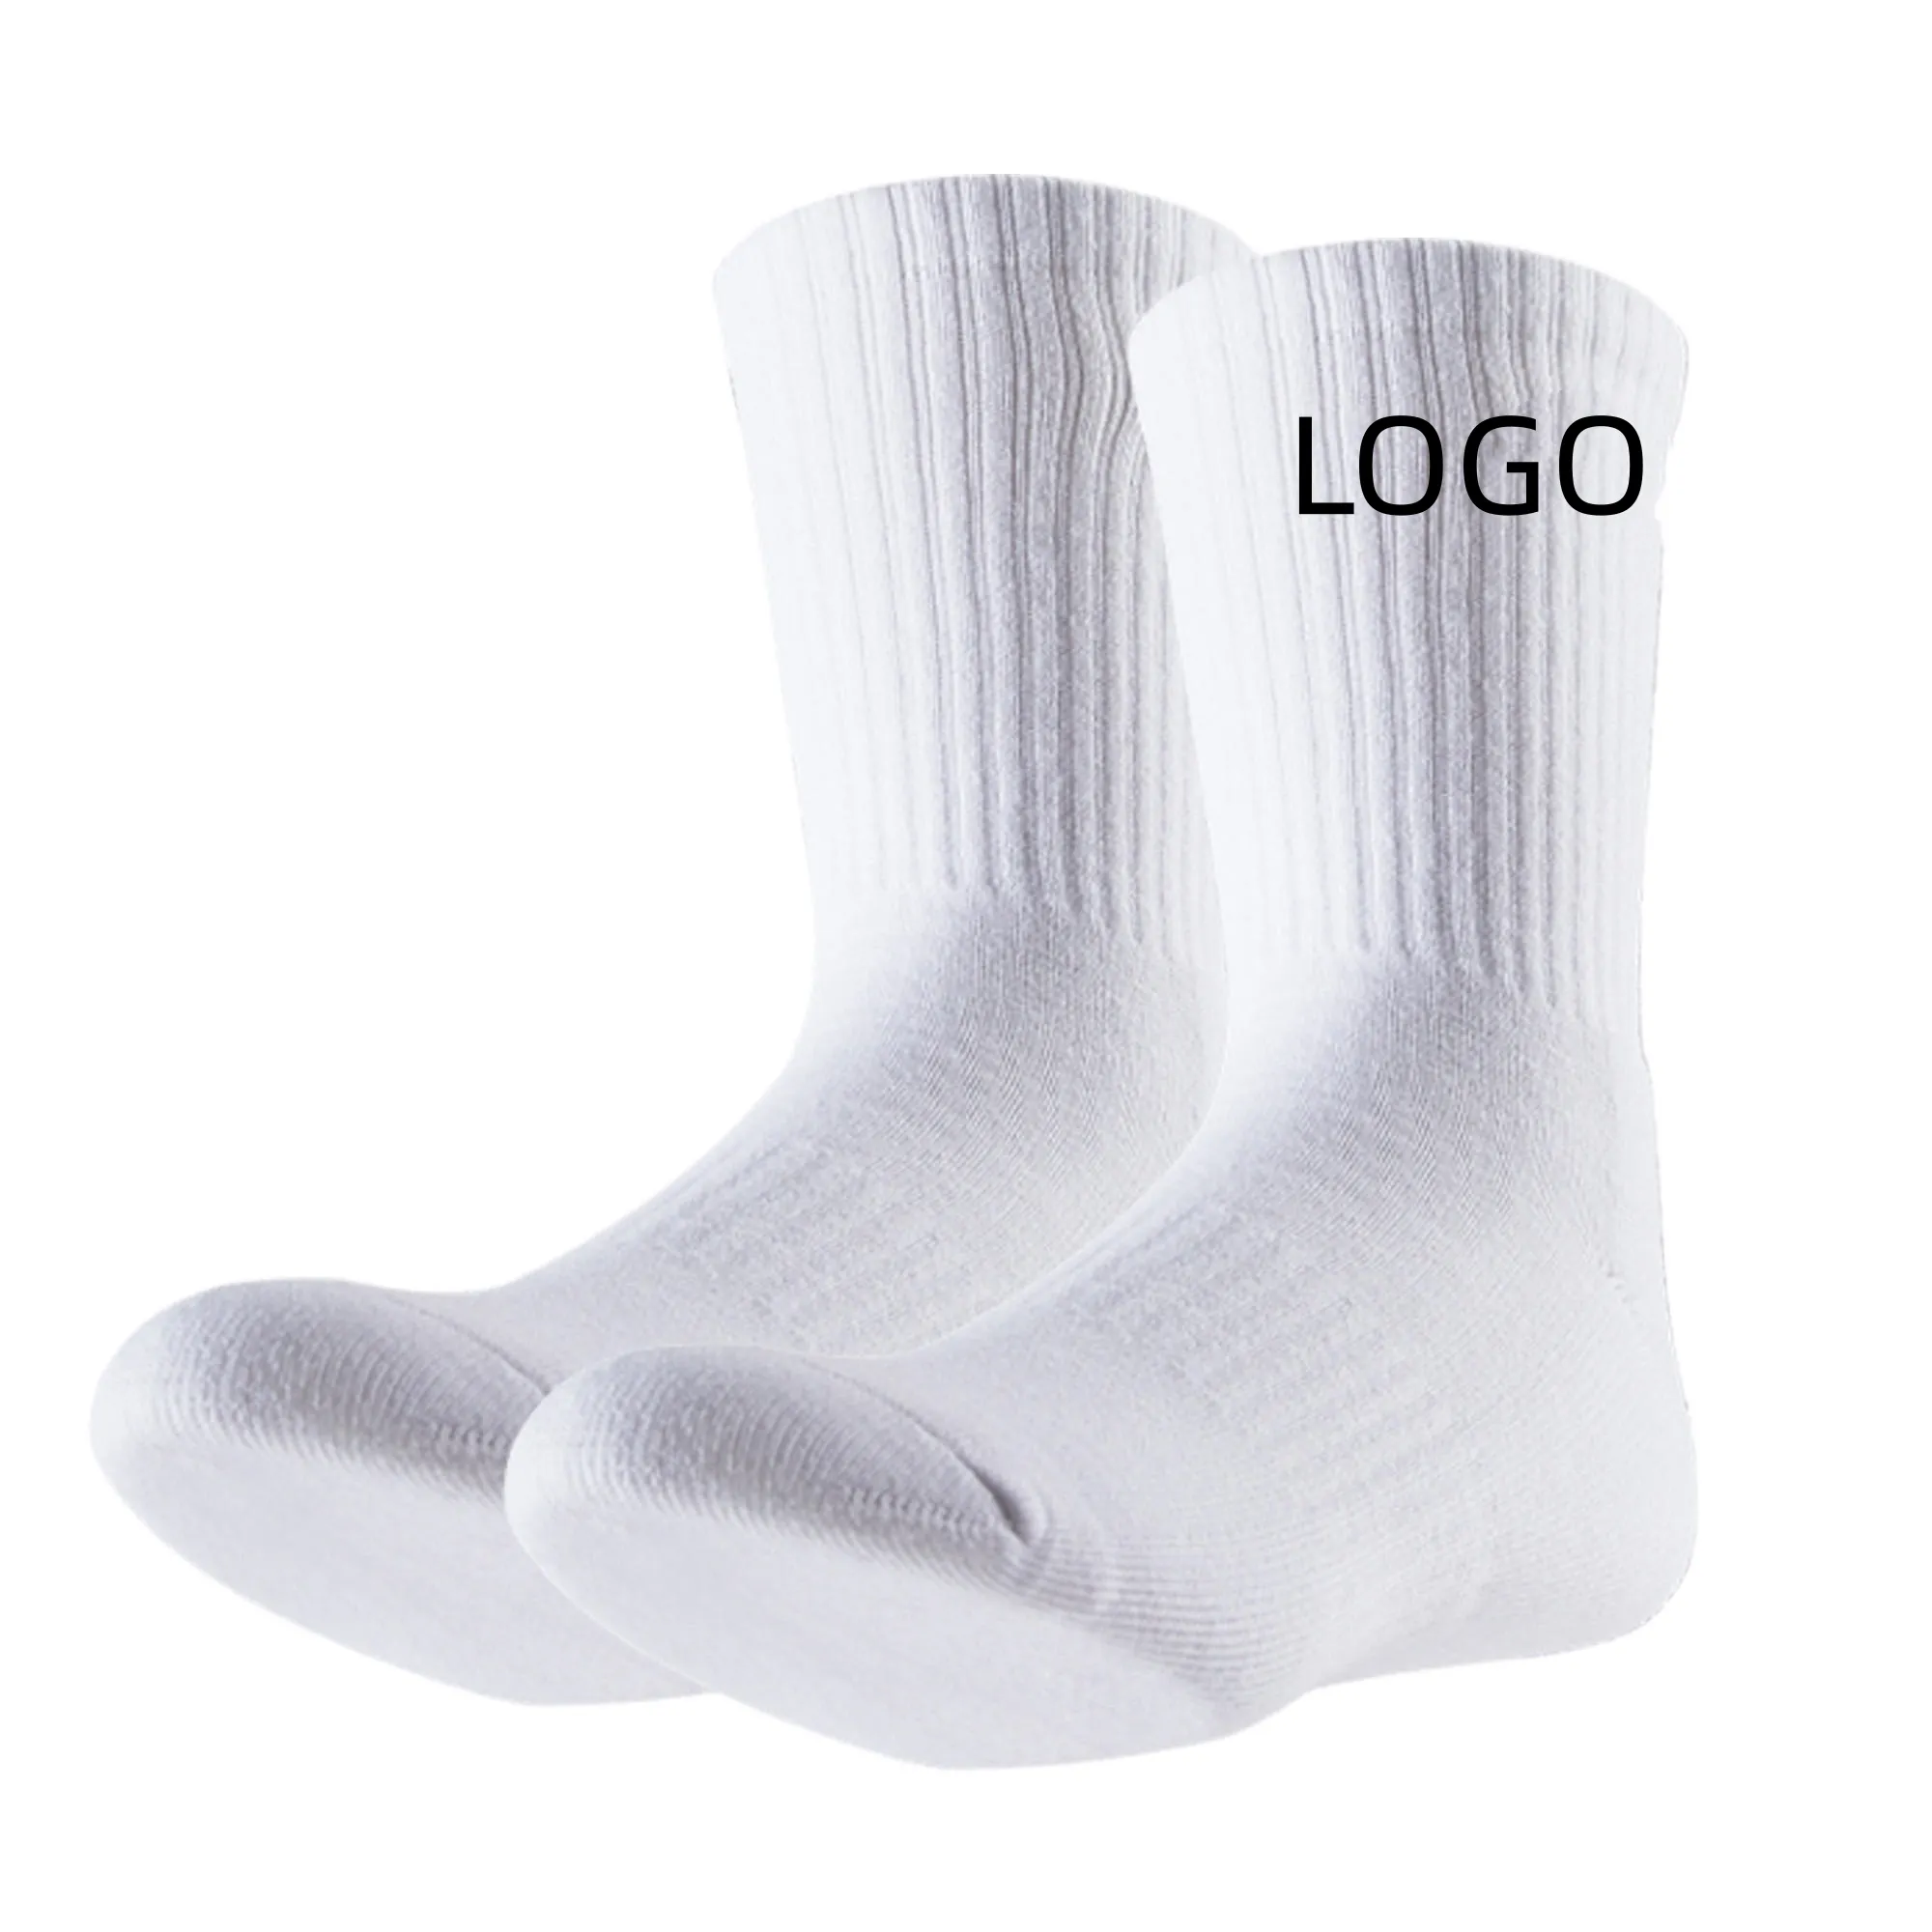 Calcetines informales blancos con logotipo personalizado, calcetines deportivos gruesos con cojín de felpa para correr atléticos lisos elásticos para hombre